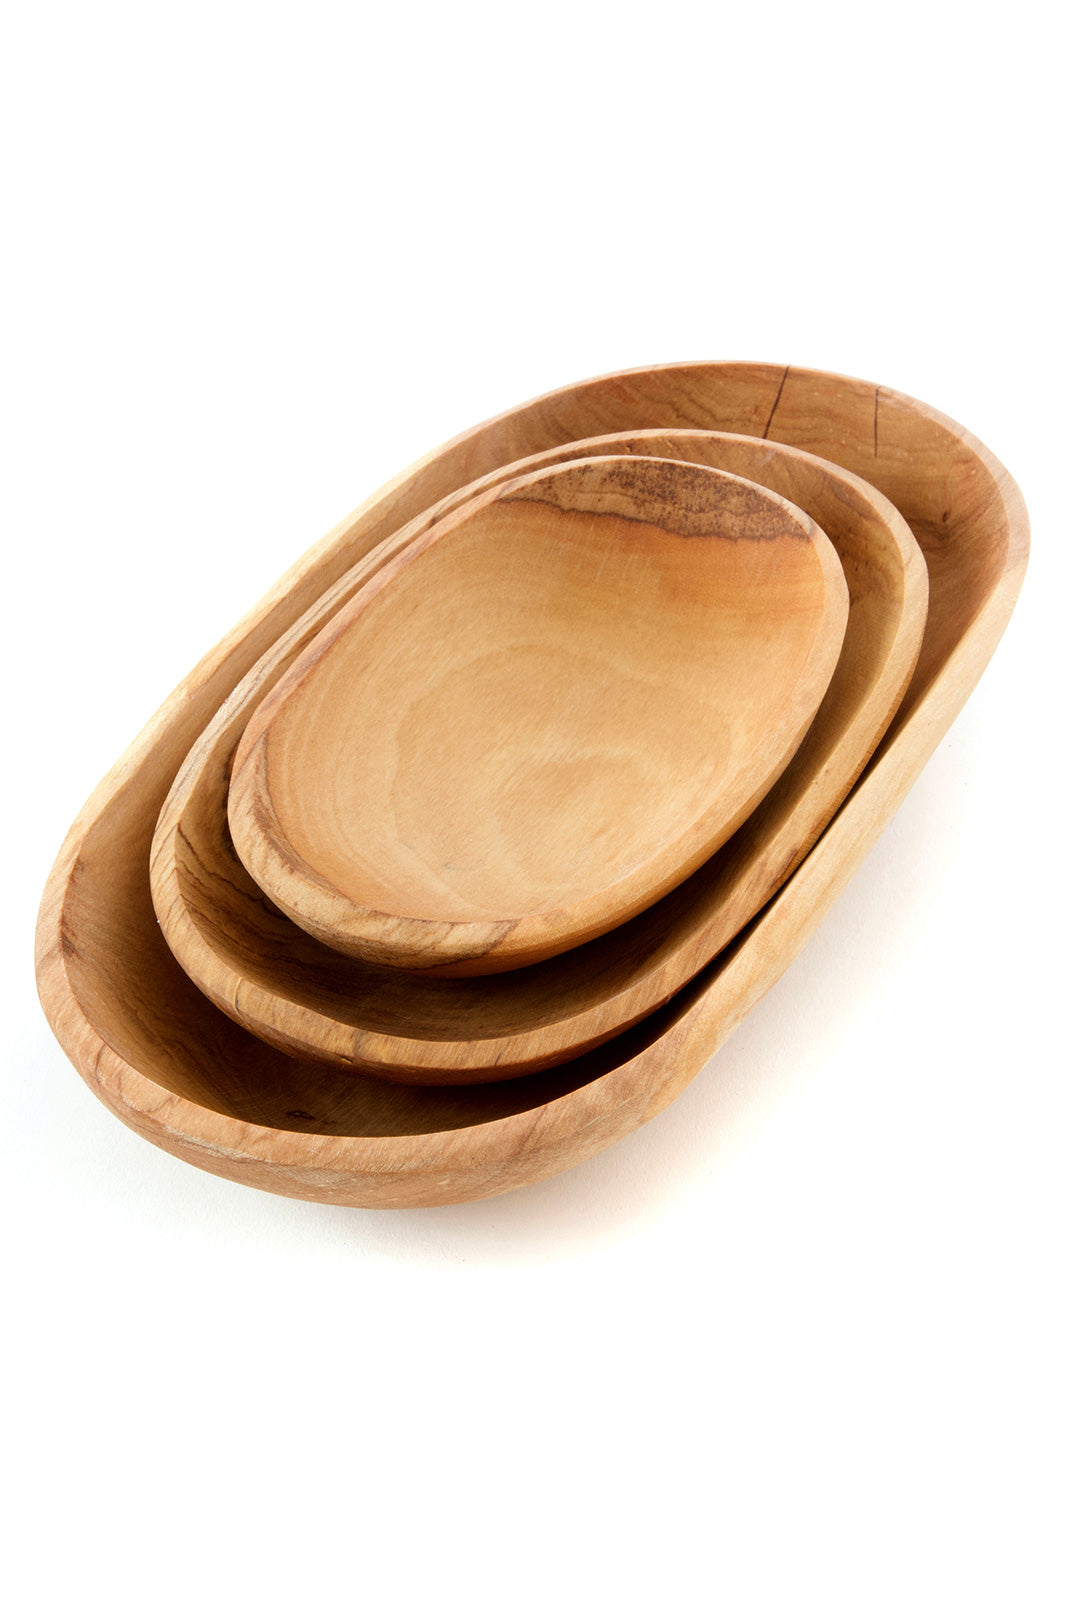 Set/3 Chef's Hand Carved Olive Wood Serving Bowls Default Title